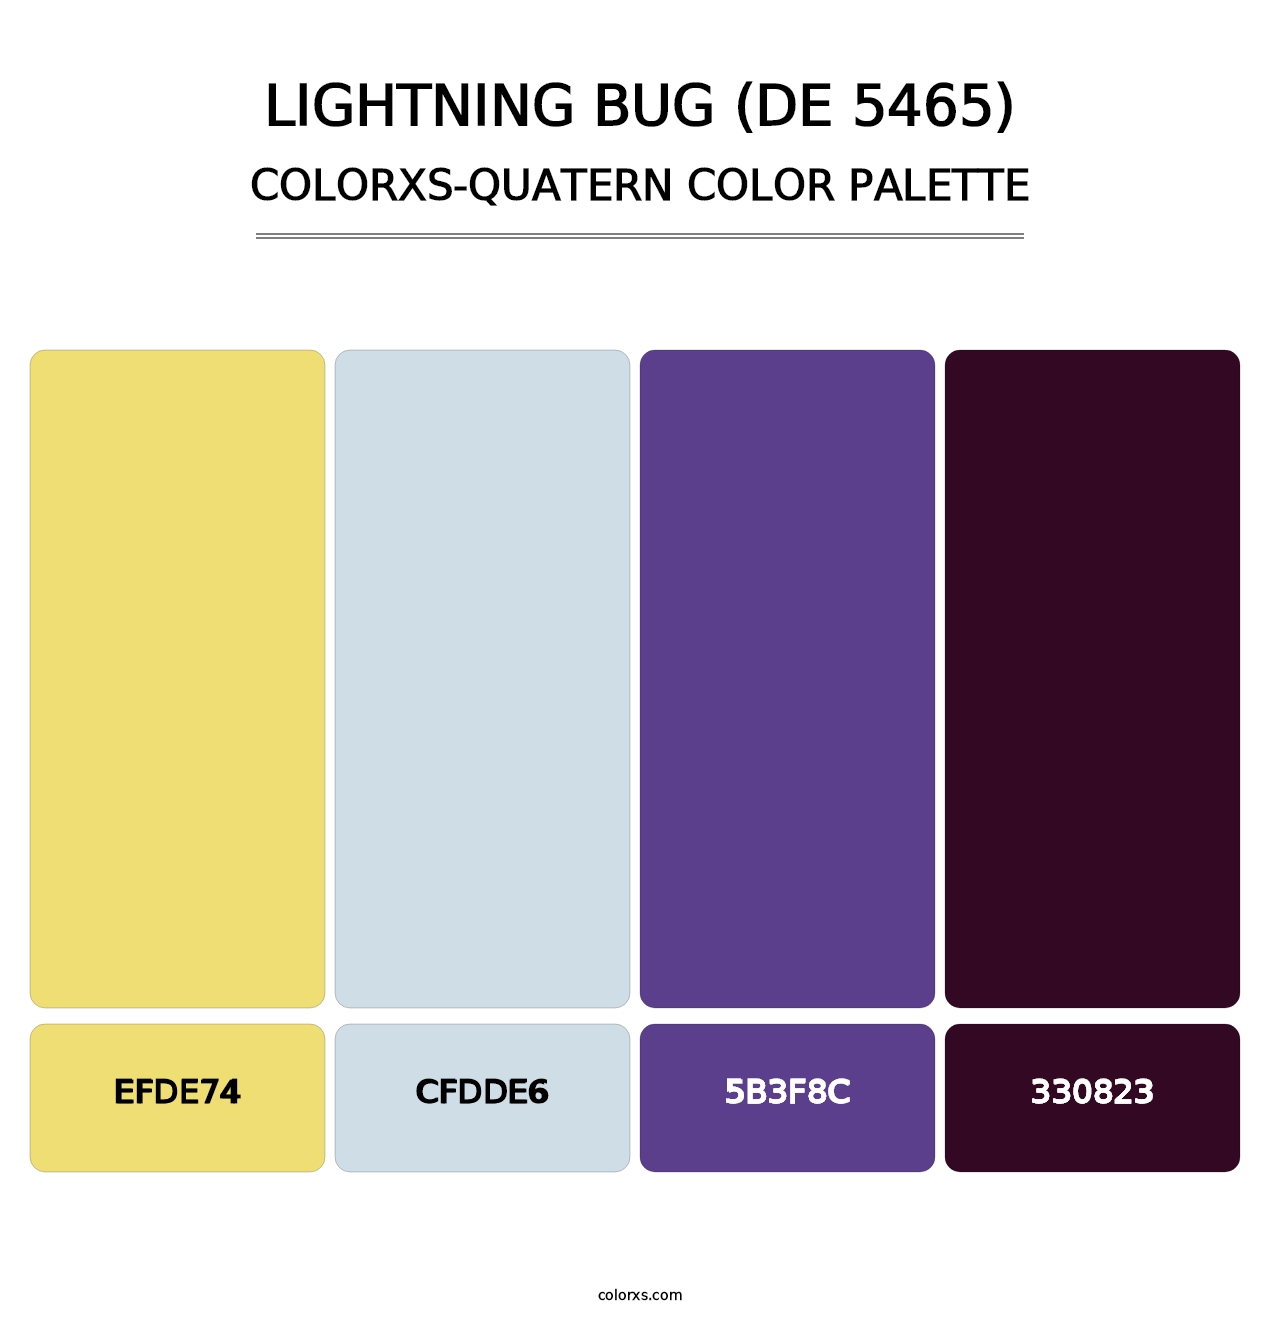 Lightning Bug (DE 5465) - Colorxs Quatern Palette